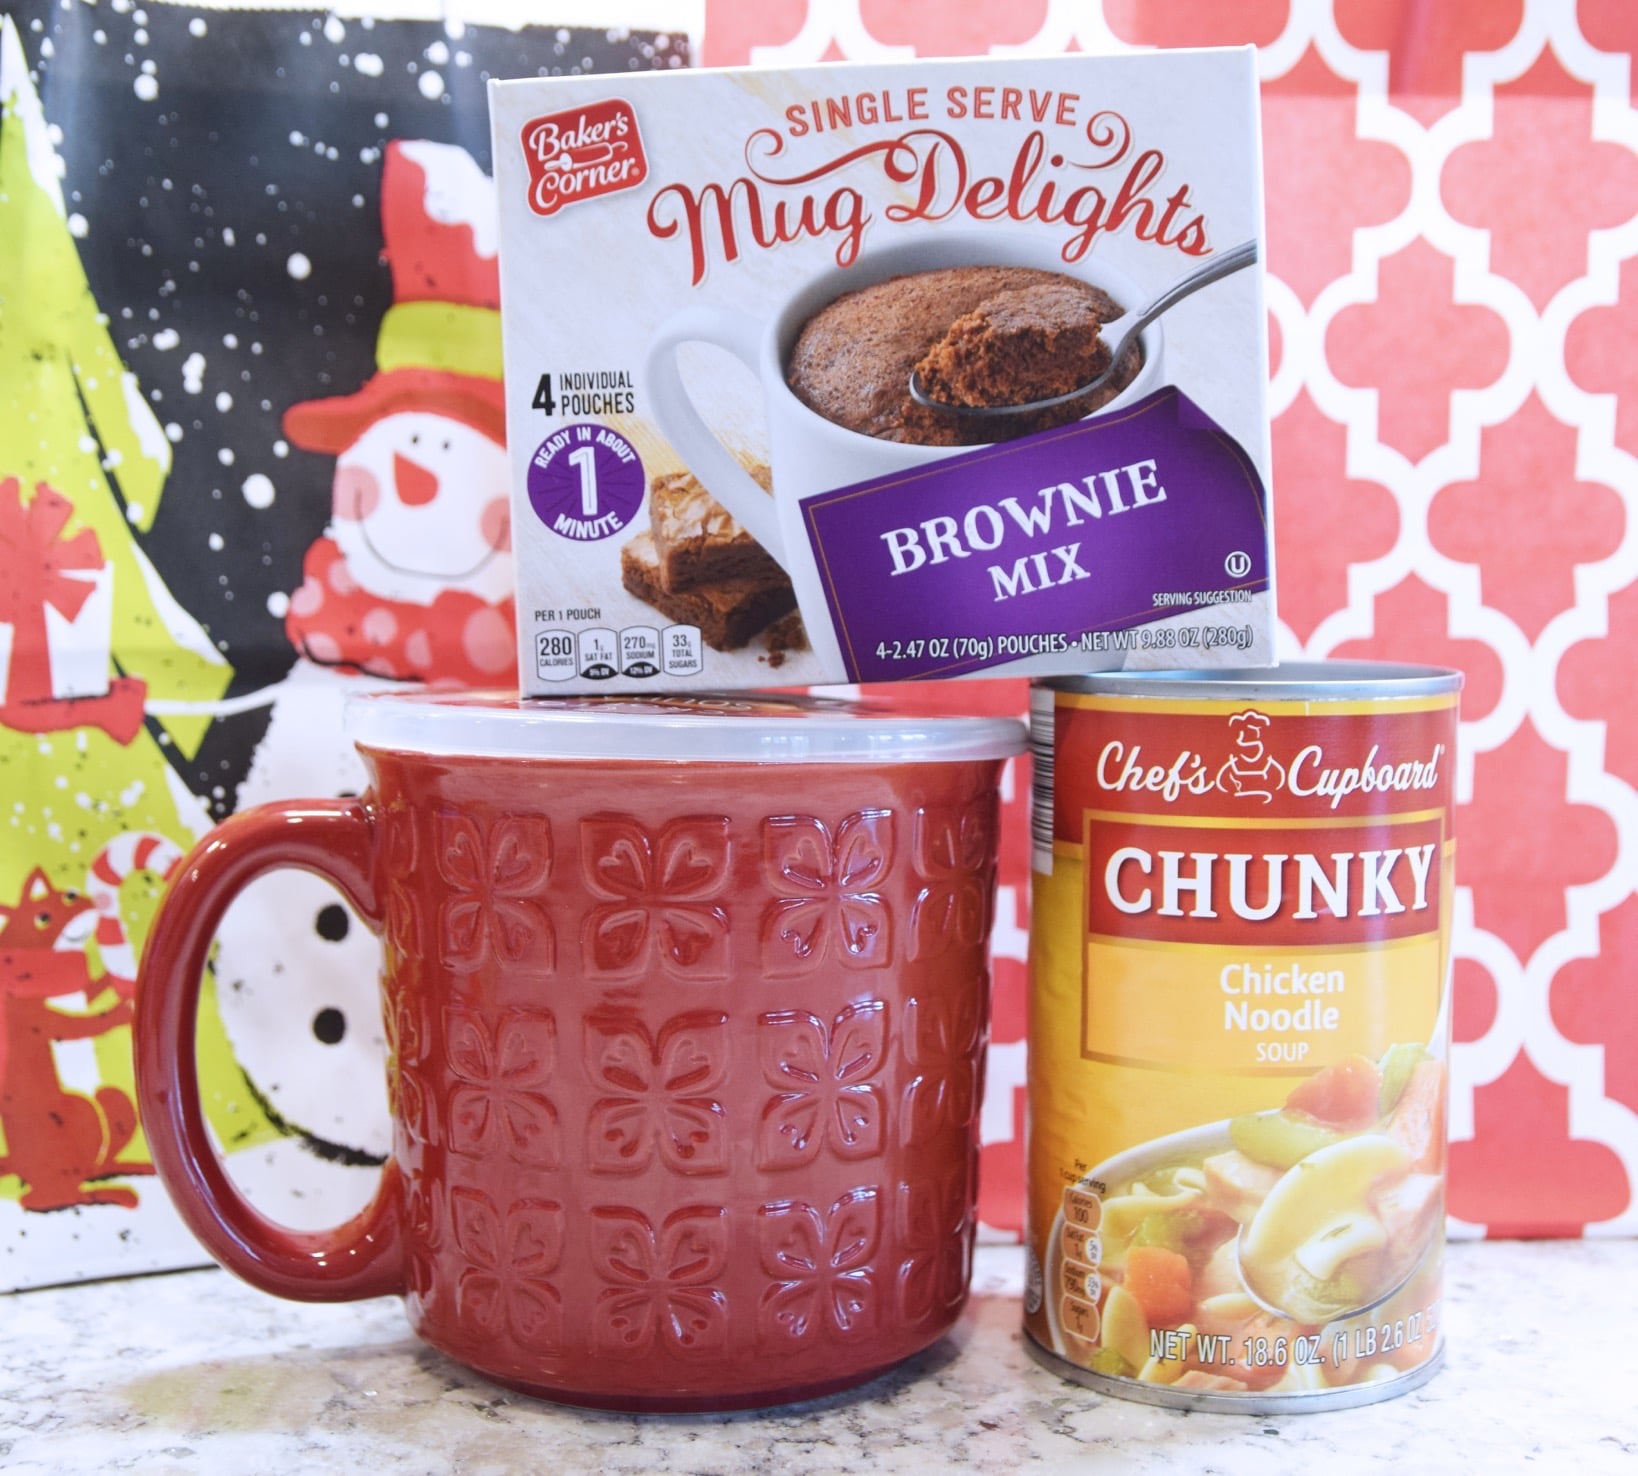 Soup mug and brownie mix